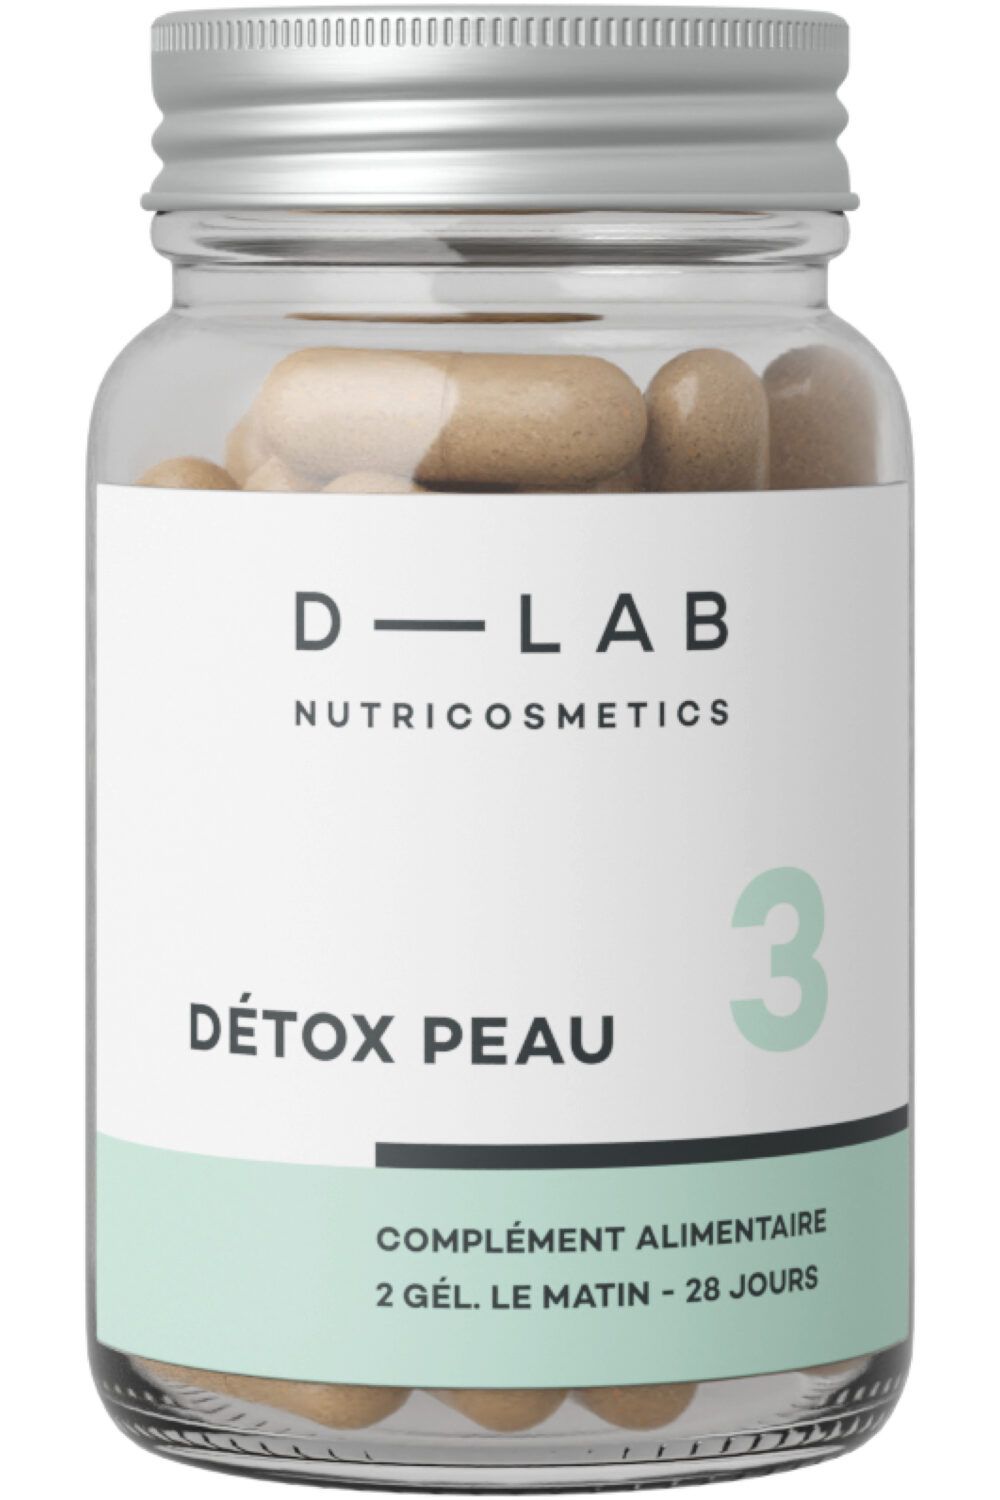 D-LAB Nutricosmetics - Complément alimentaire Détox Peau 1 mois